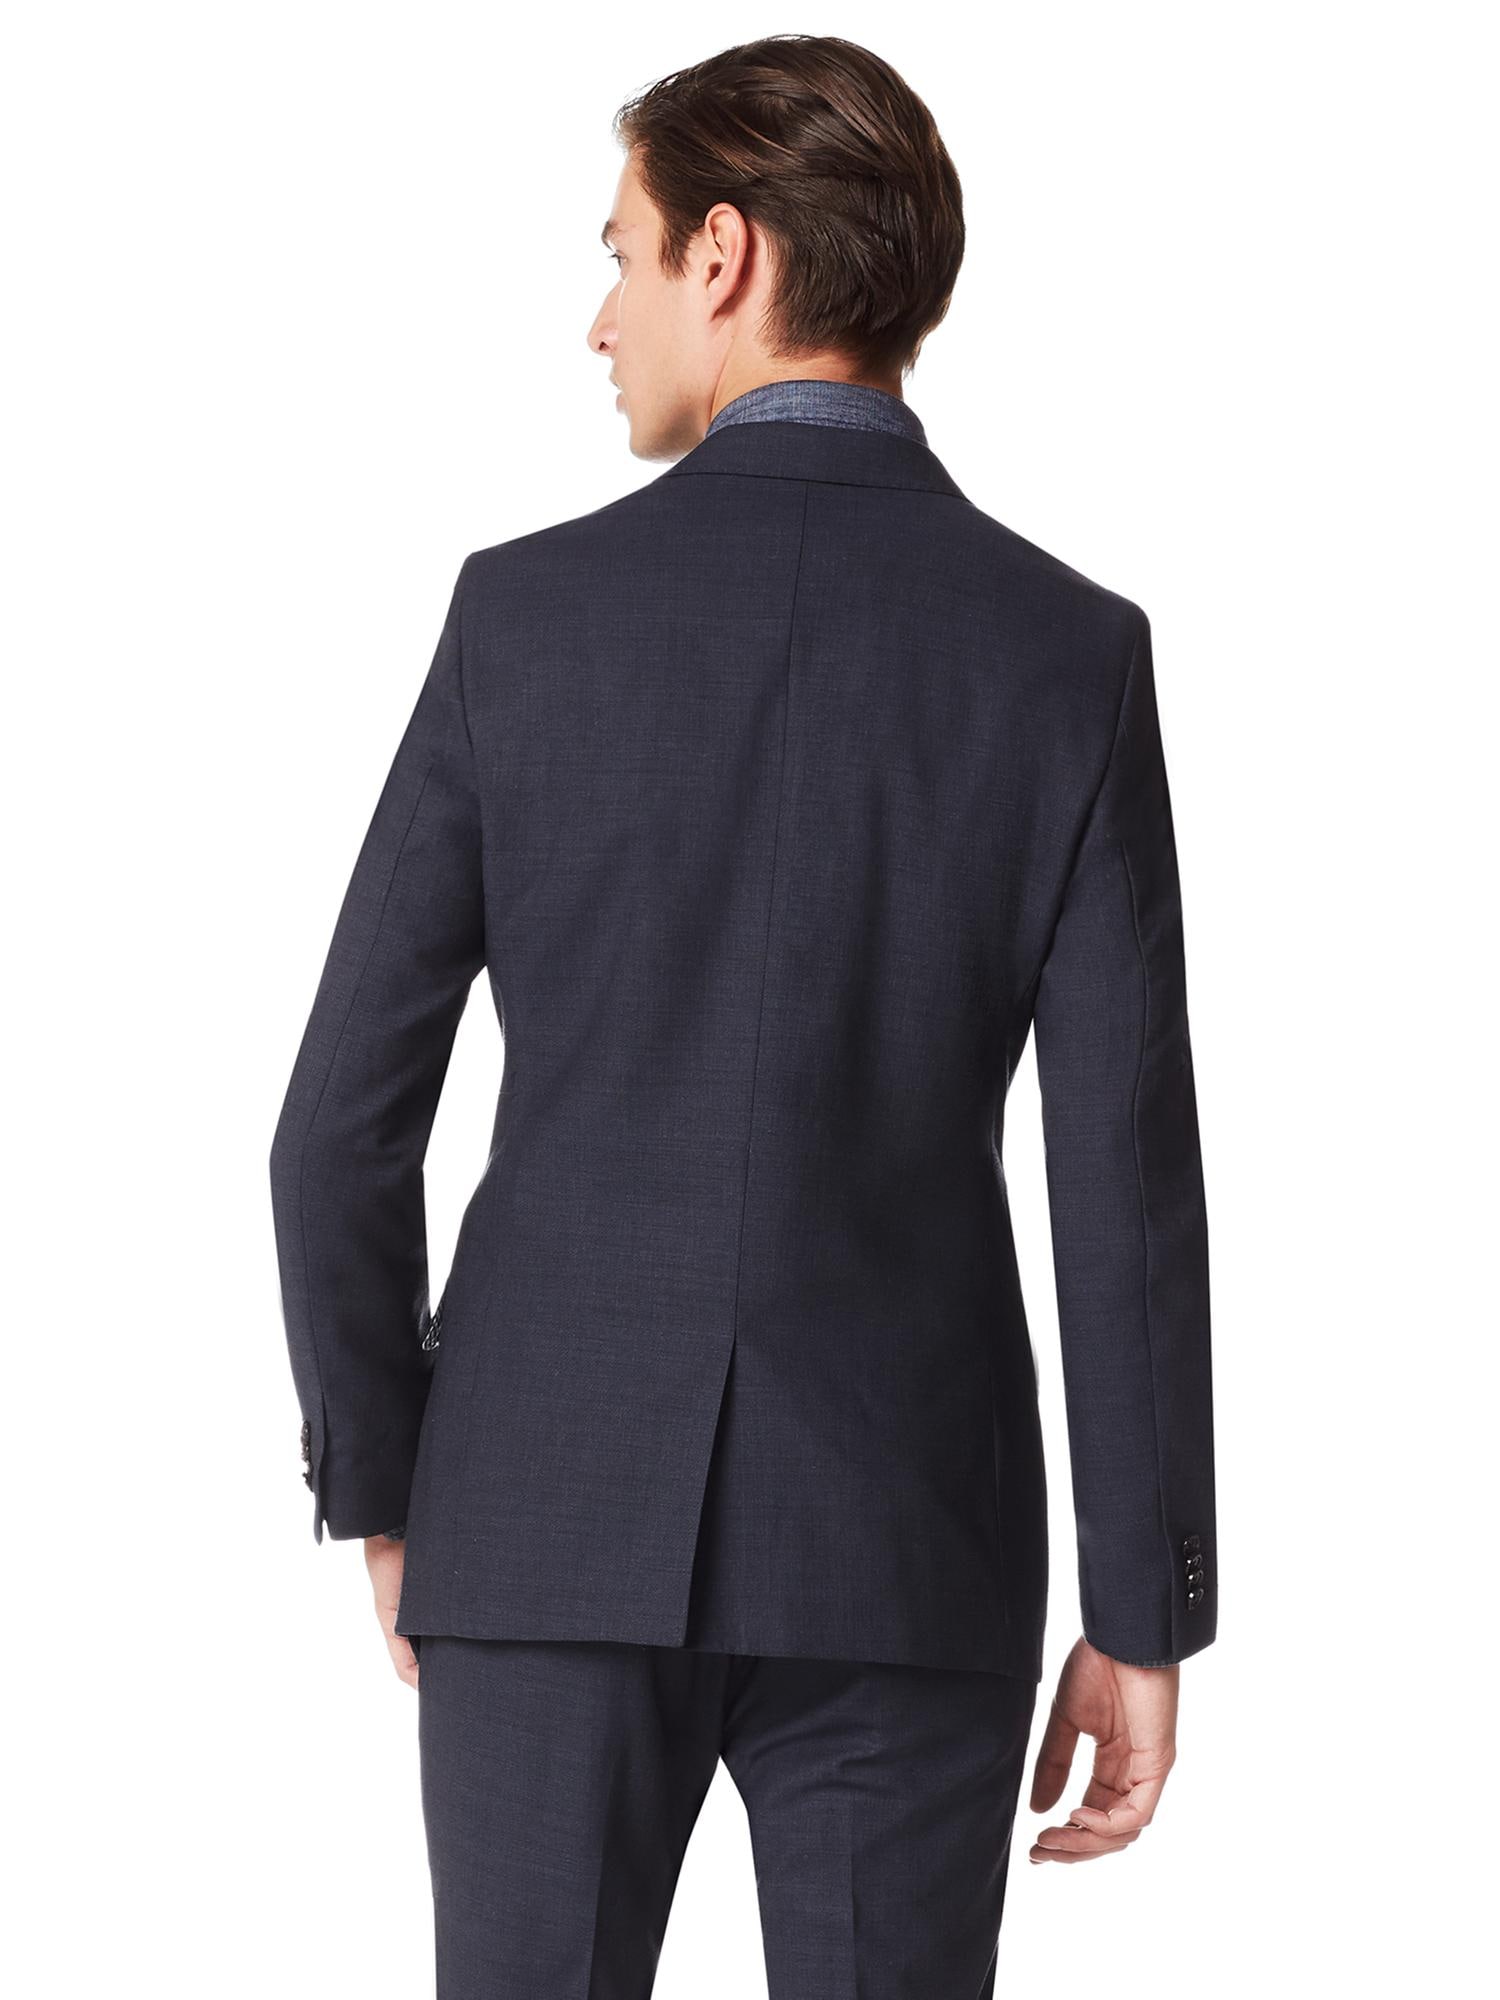 Modern Slim-Fit Navy Wool Suit Jacket